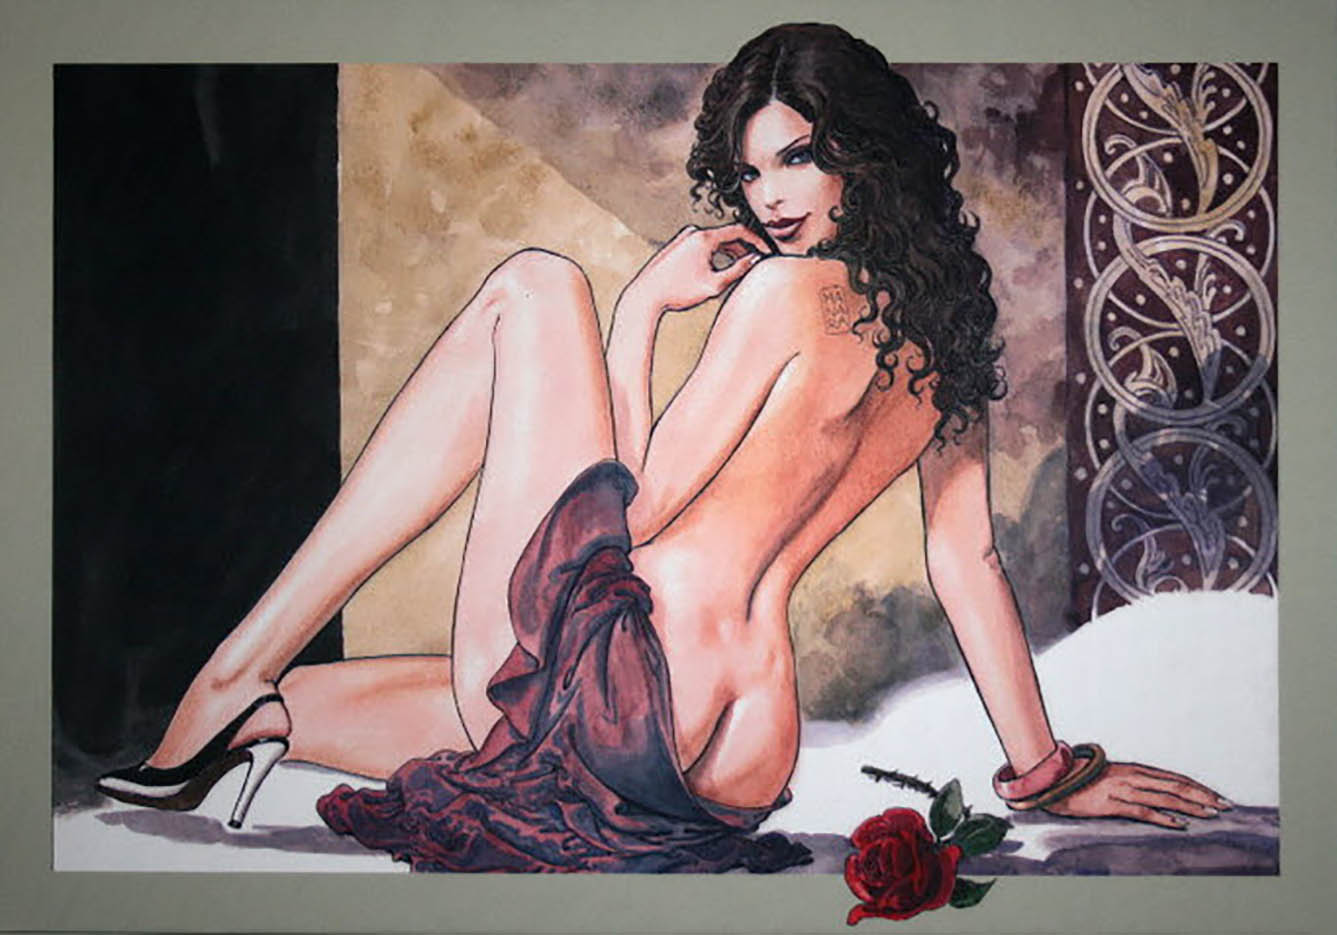 Мило Манара (Milo Manara), Erotic Illustration - 39